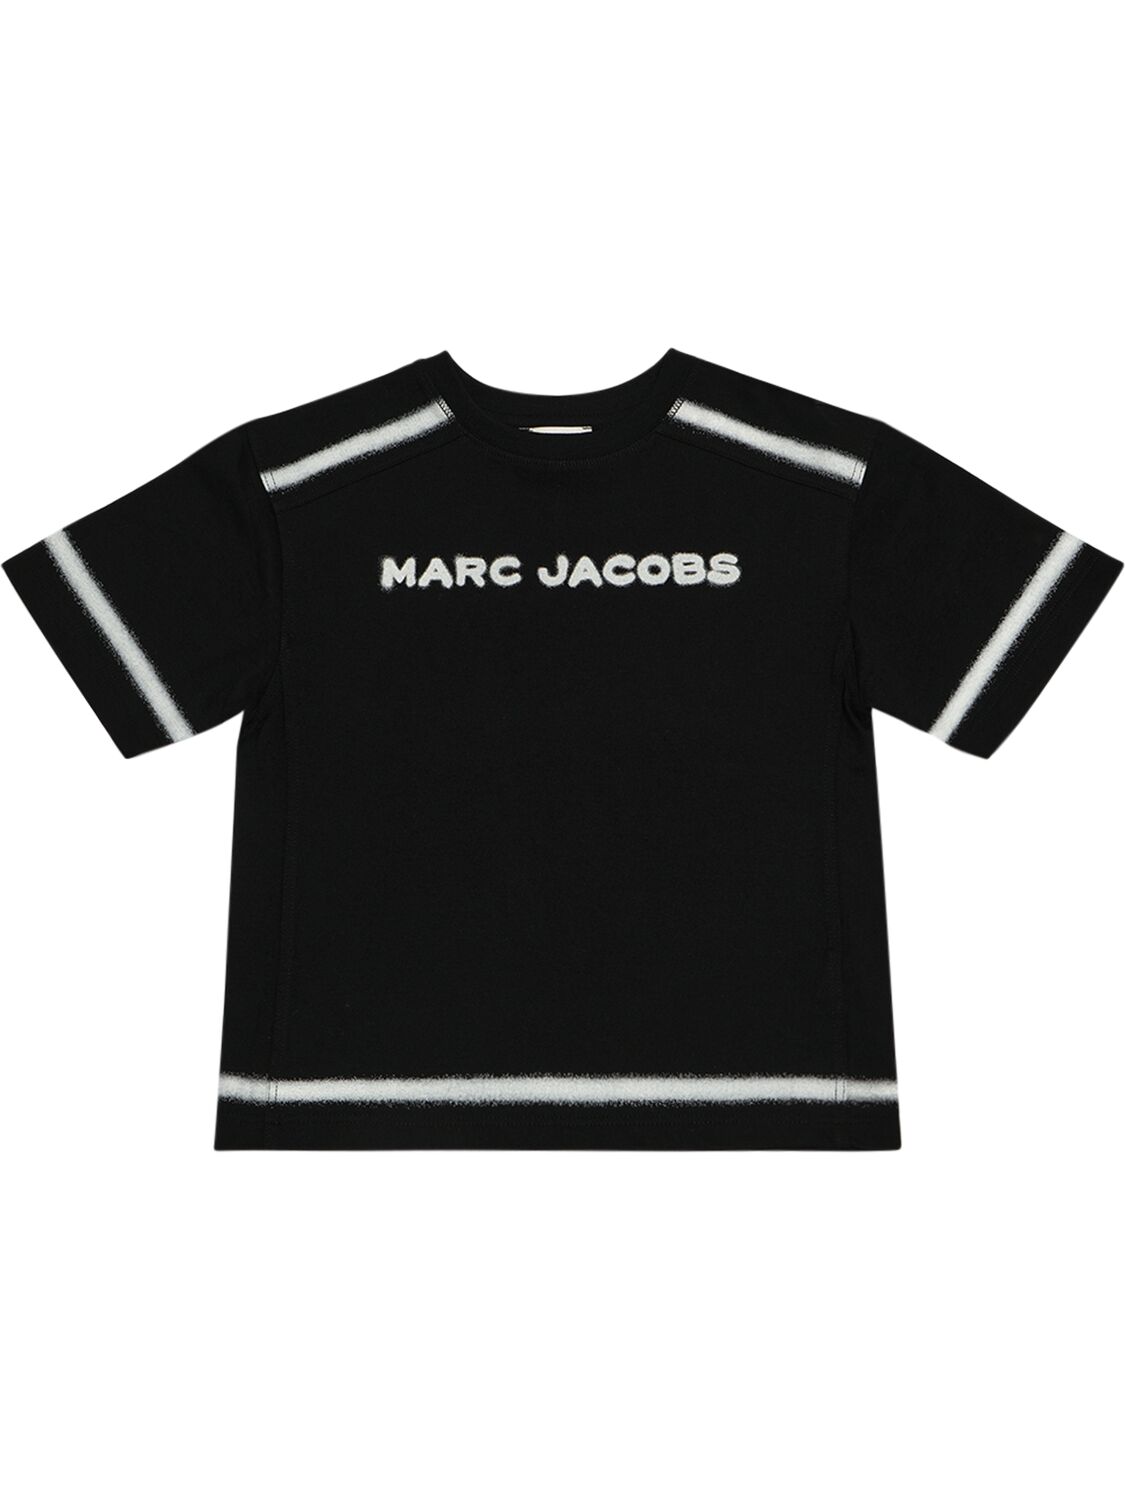 Marc Jacobs Kids' 有机棉平纹针织t恤 In Black